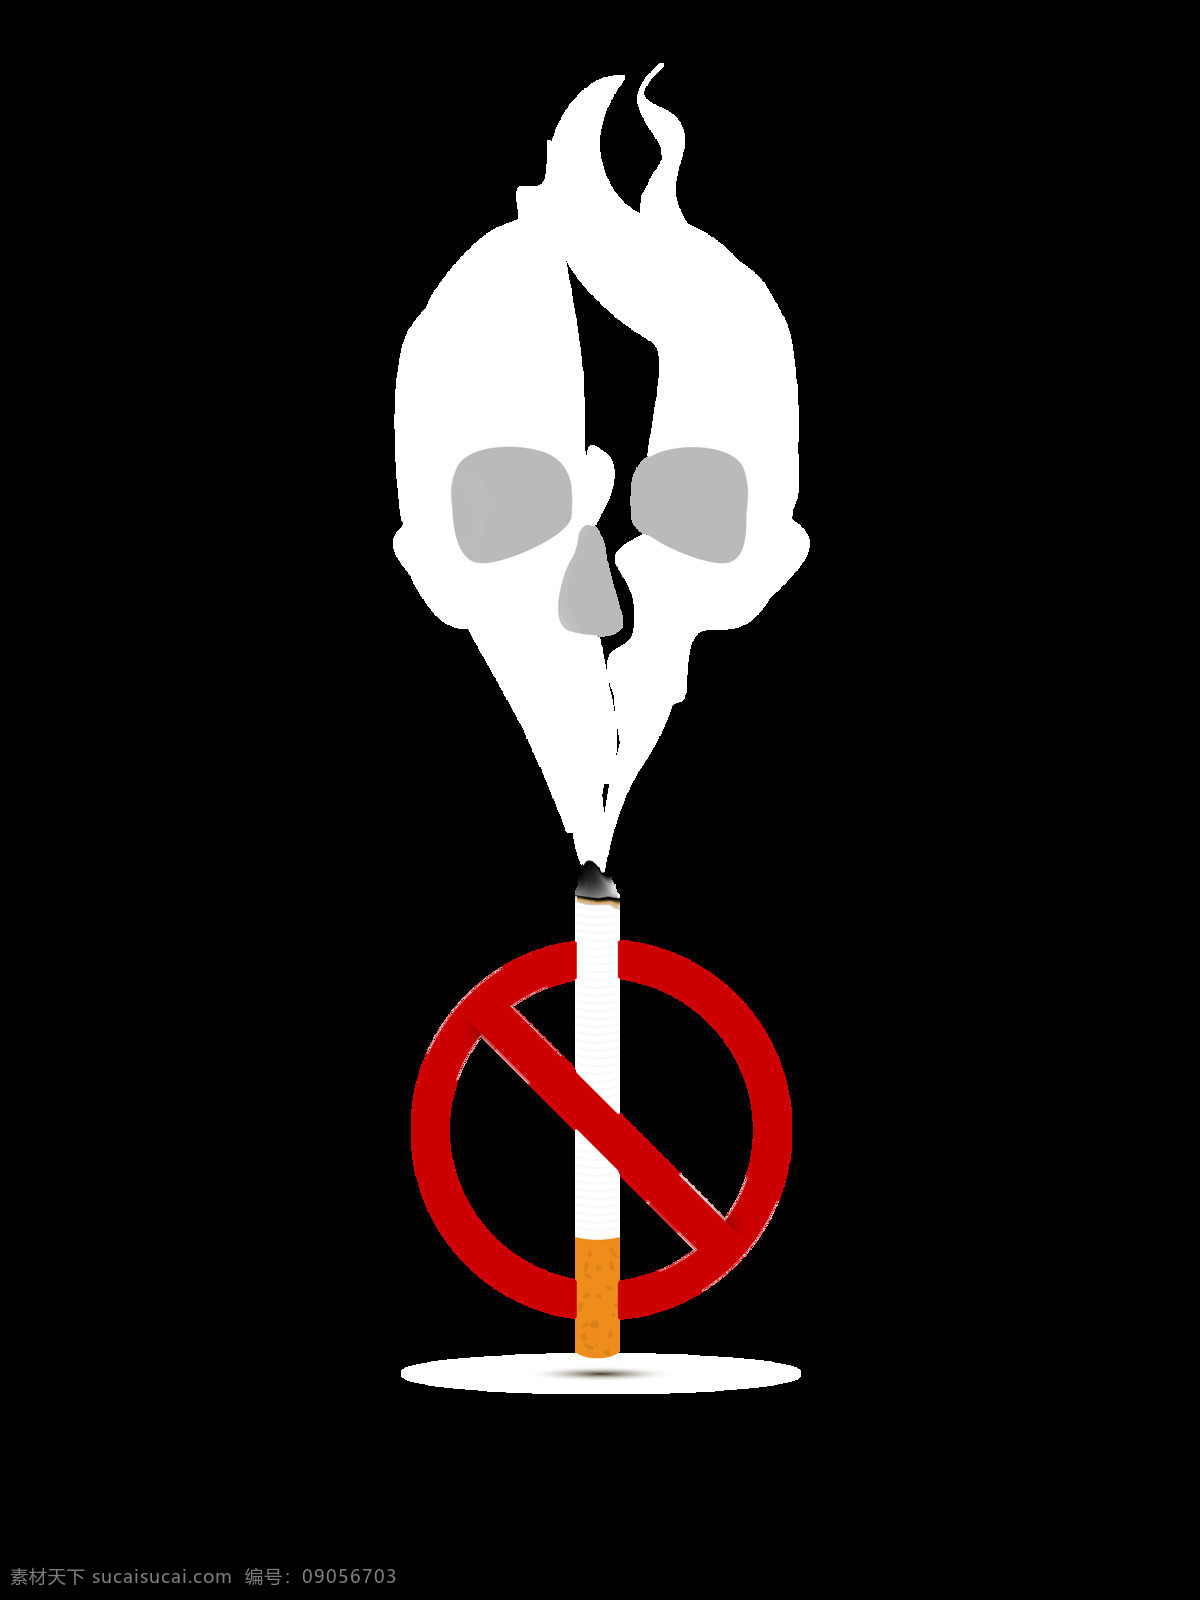 天都 吸食 自己 生命 禁止 吸烟 艺术 字 禁止吸烟 广告 字体 戒烟 艺术字 海报 警告 元素 骷髅